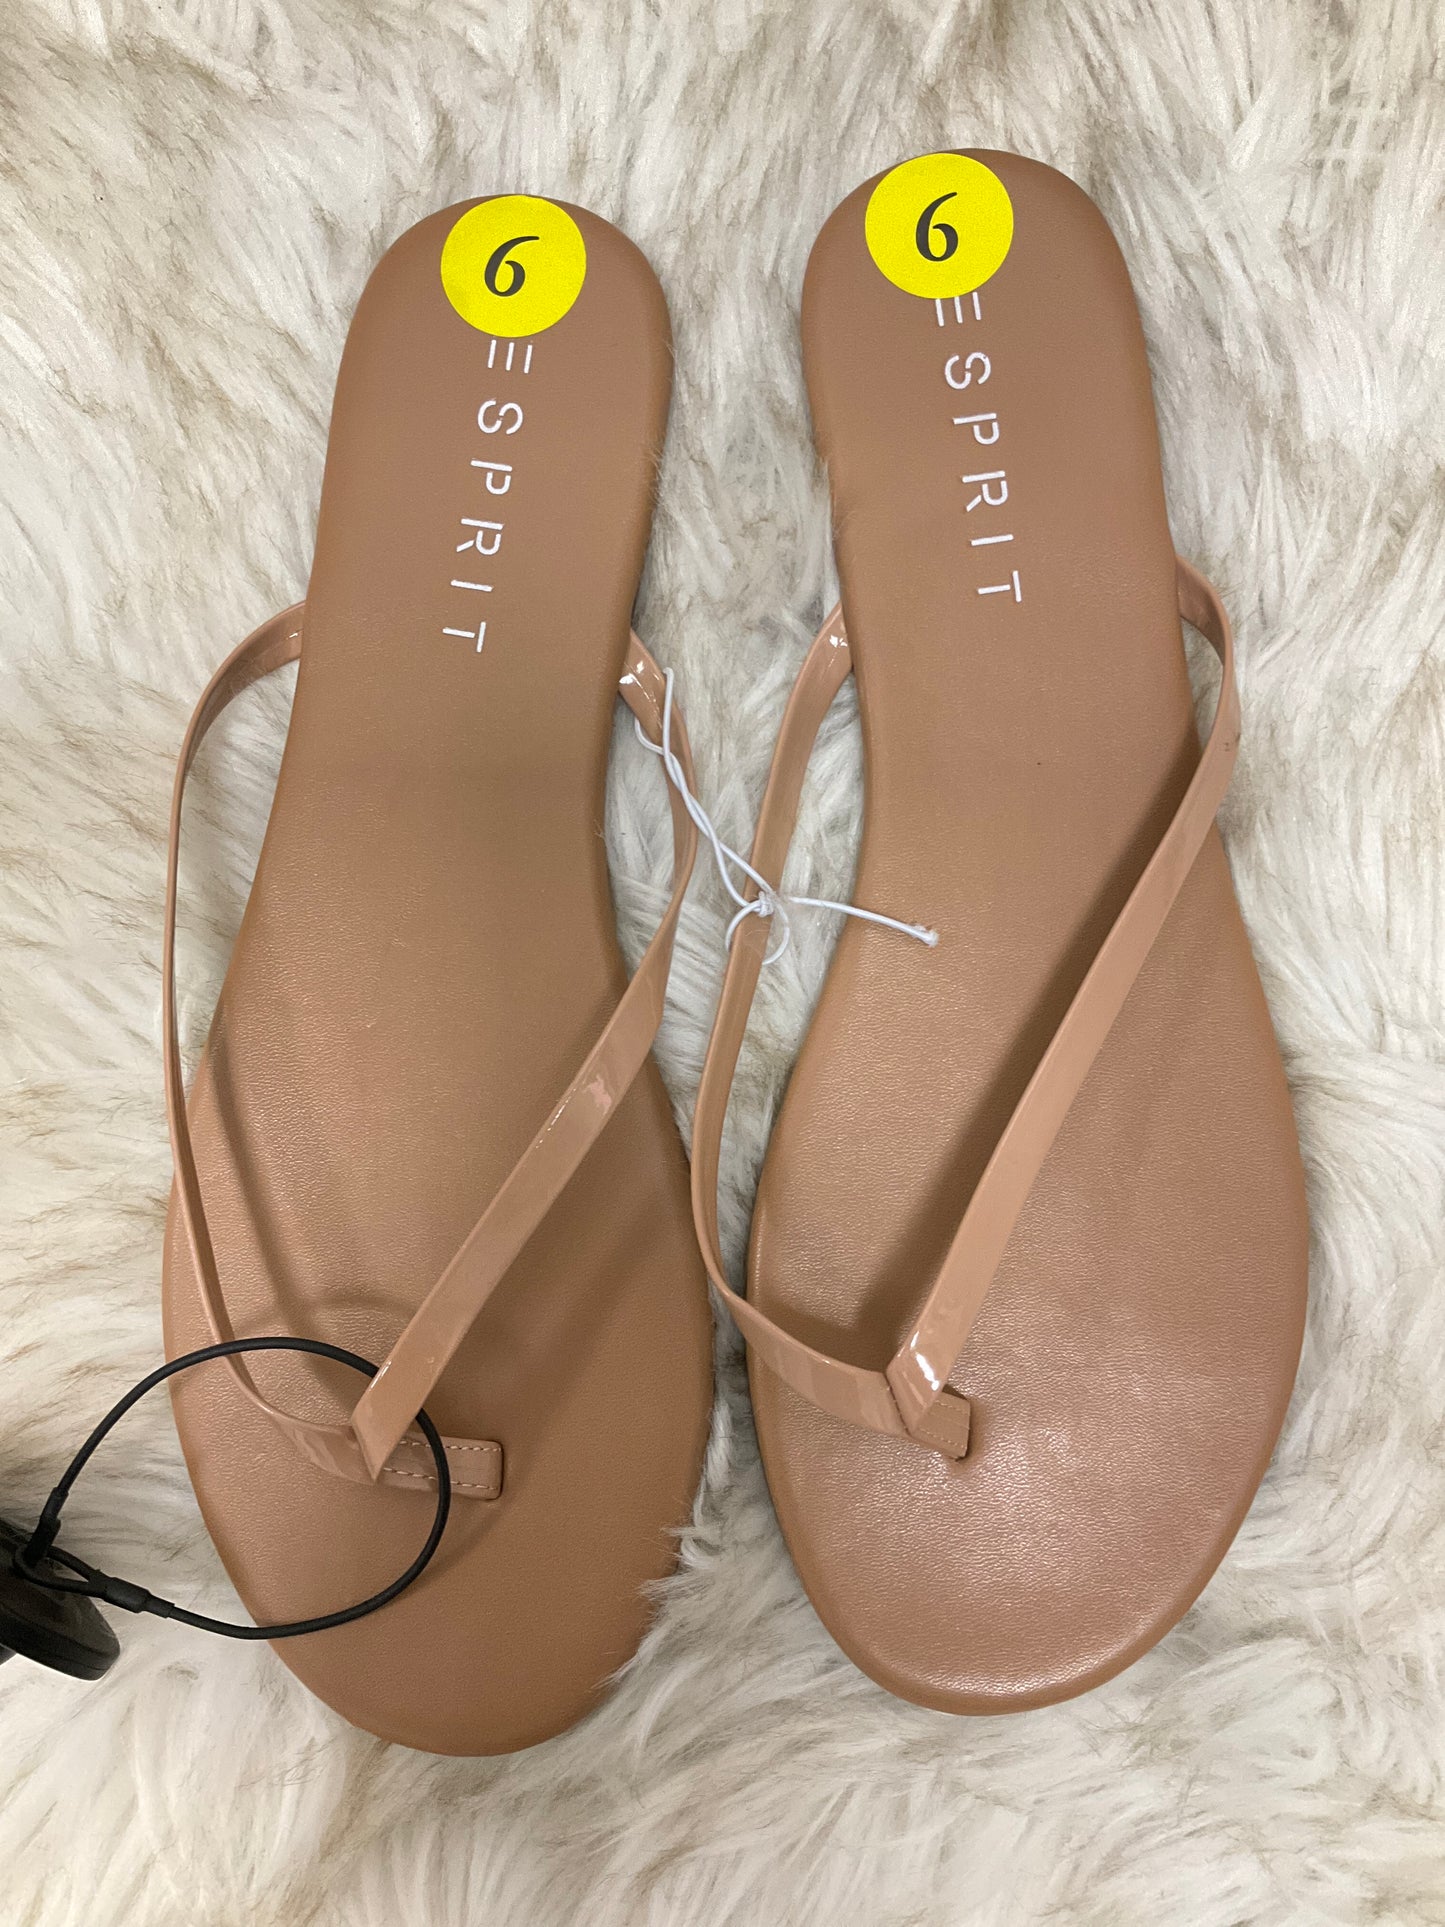 Sandals Flip Flops By Esprit  Size: 9